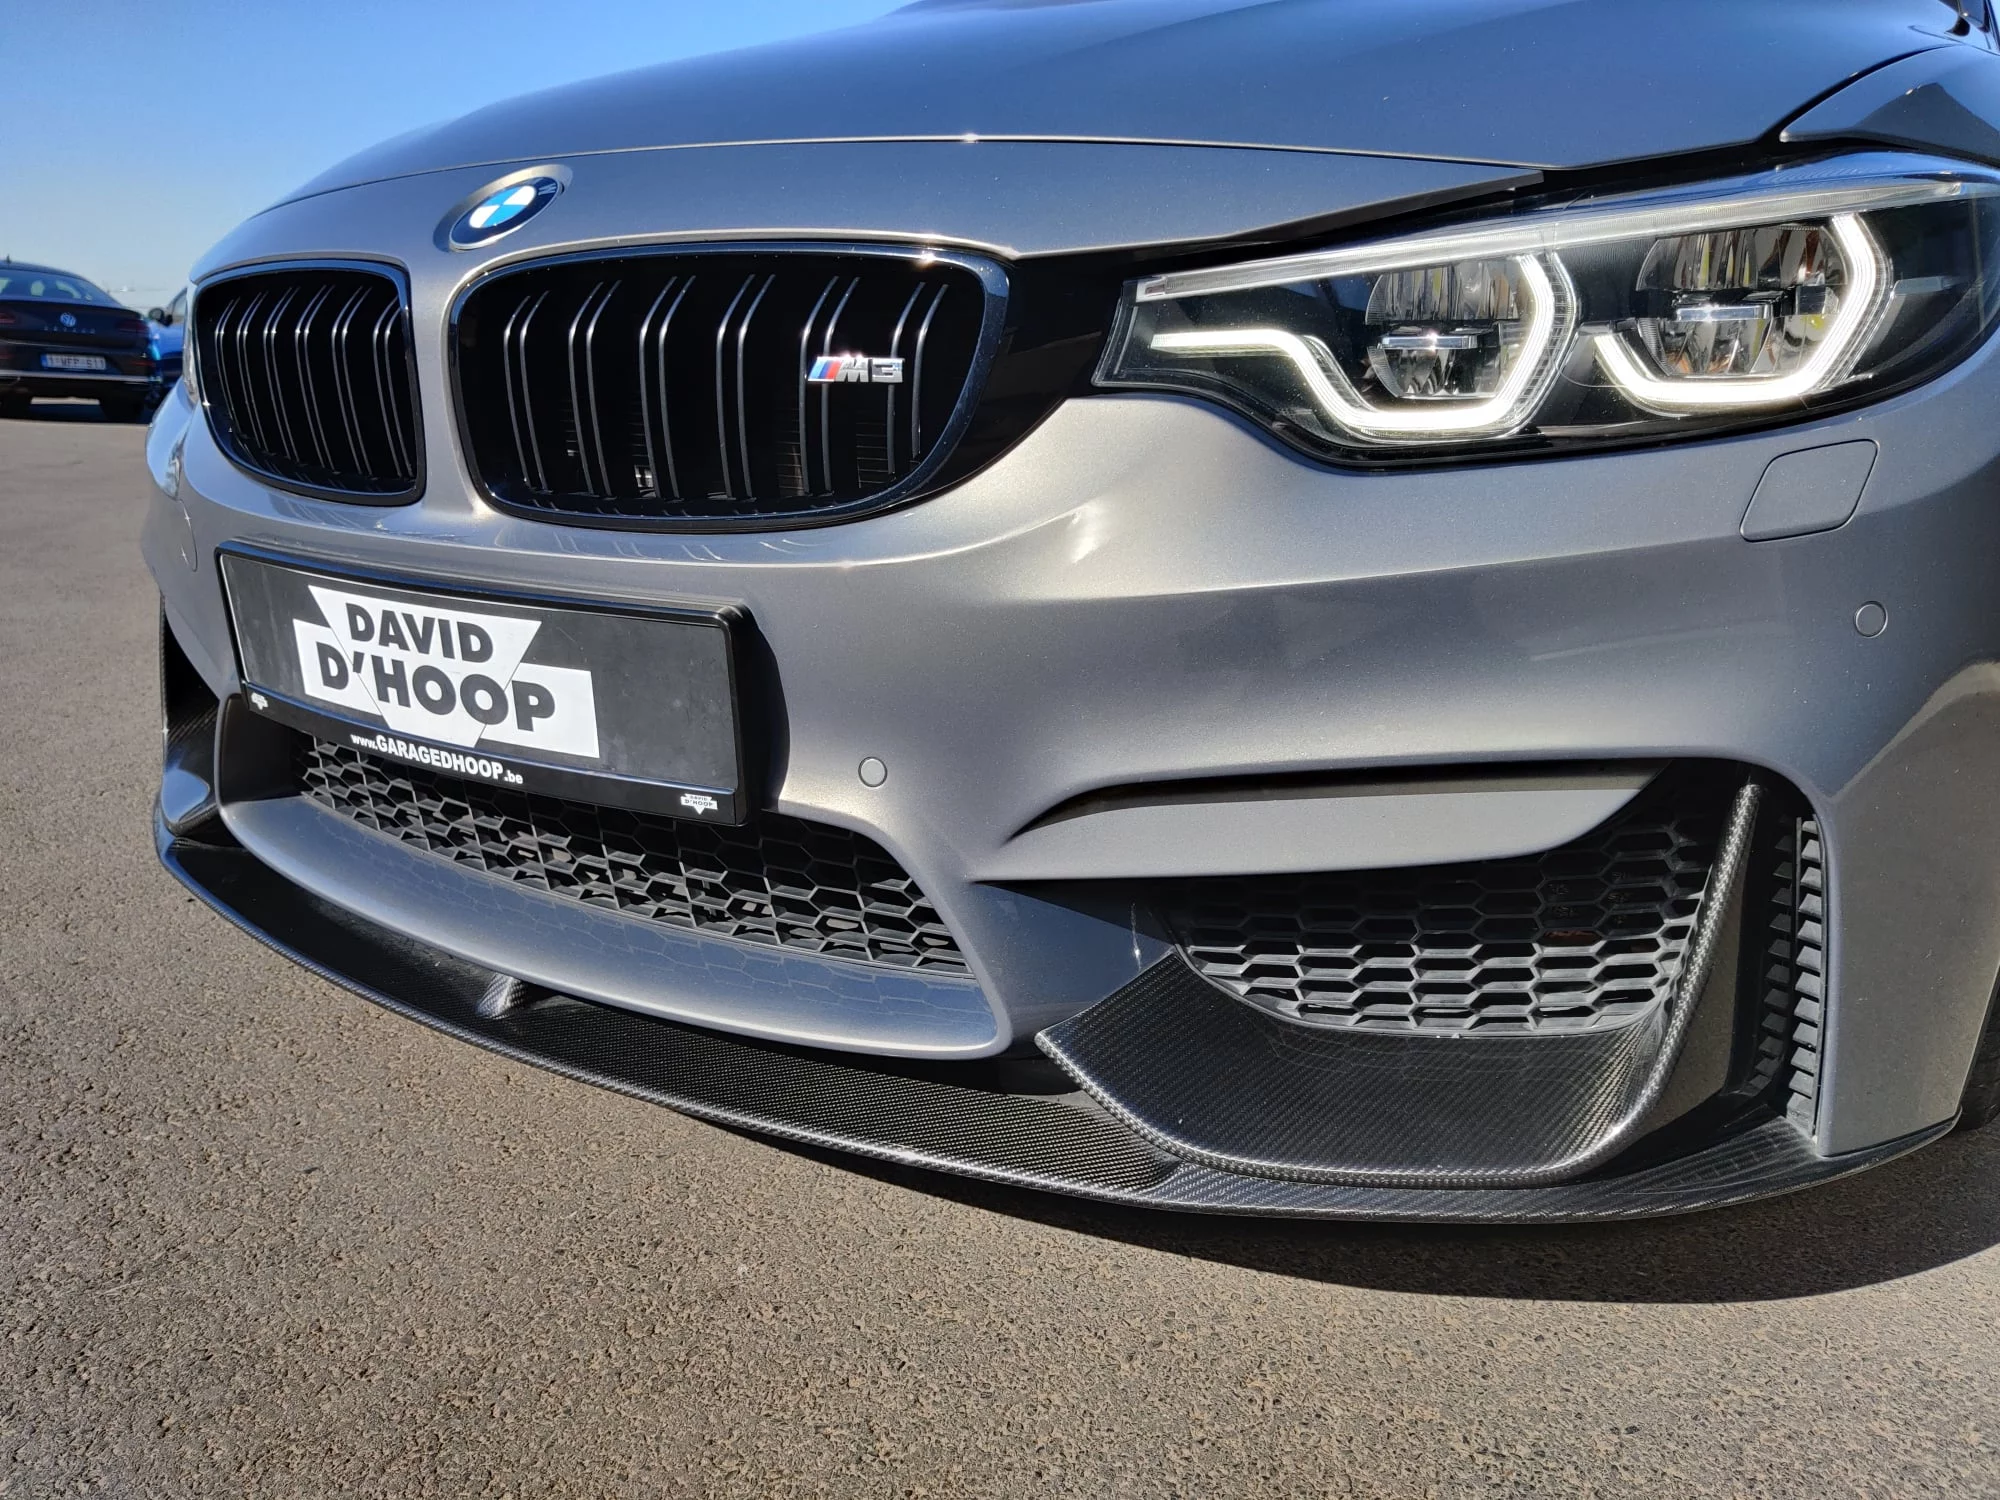 Stratus Grey BMW M3